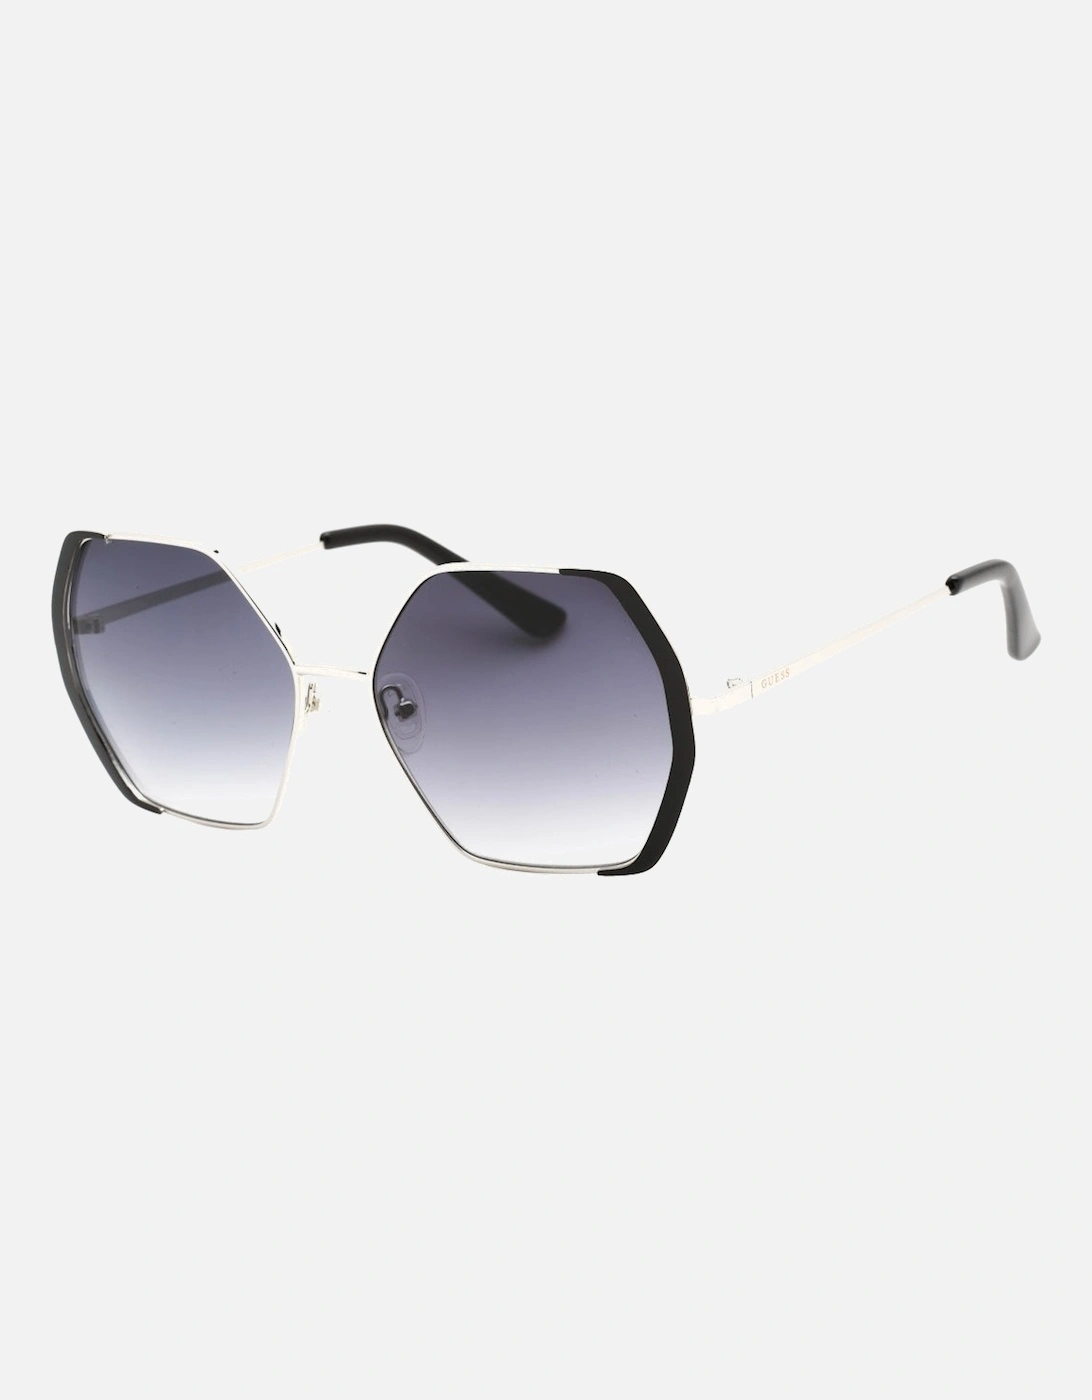 GF0387 10B Silver Sunglasses